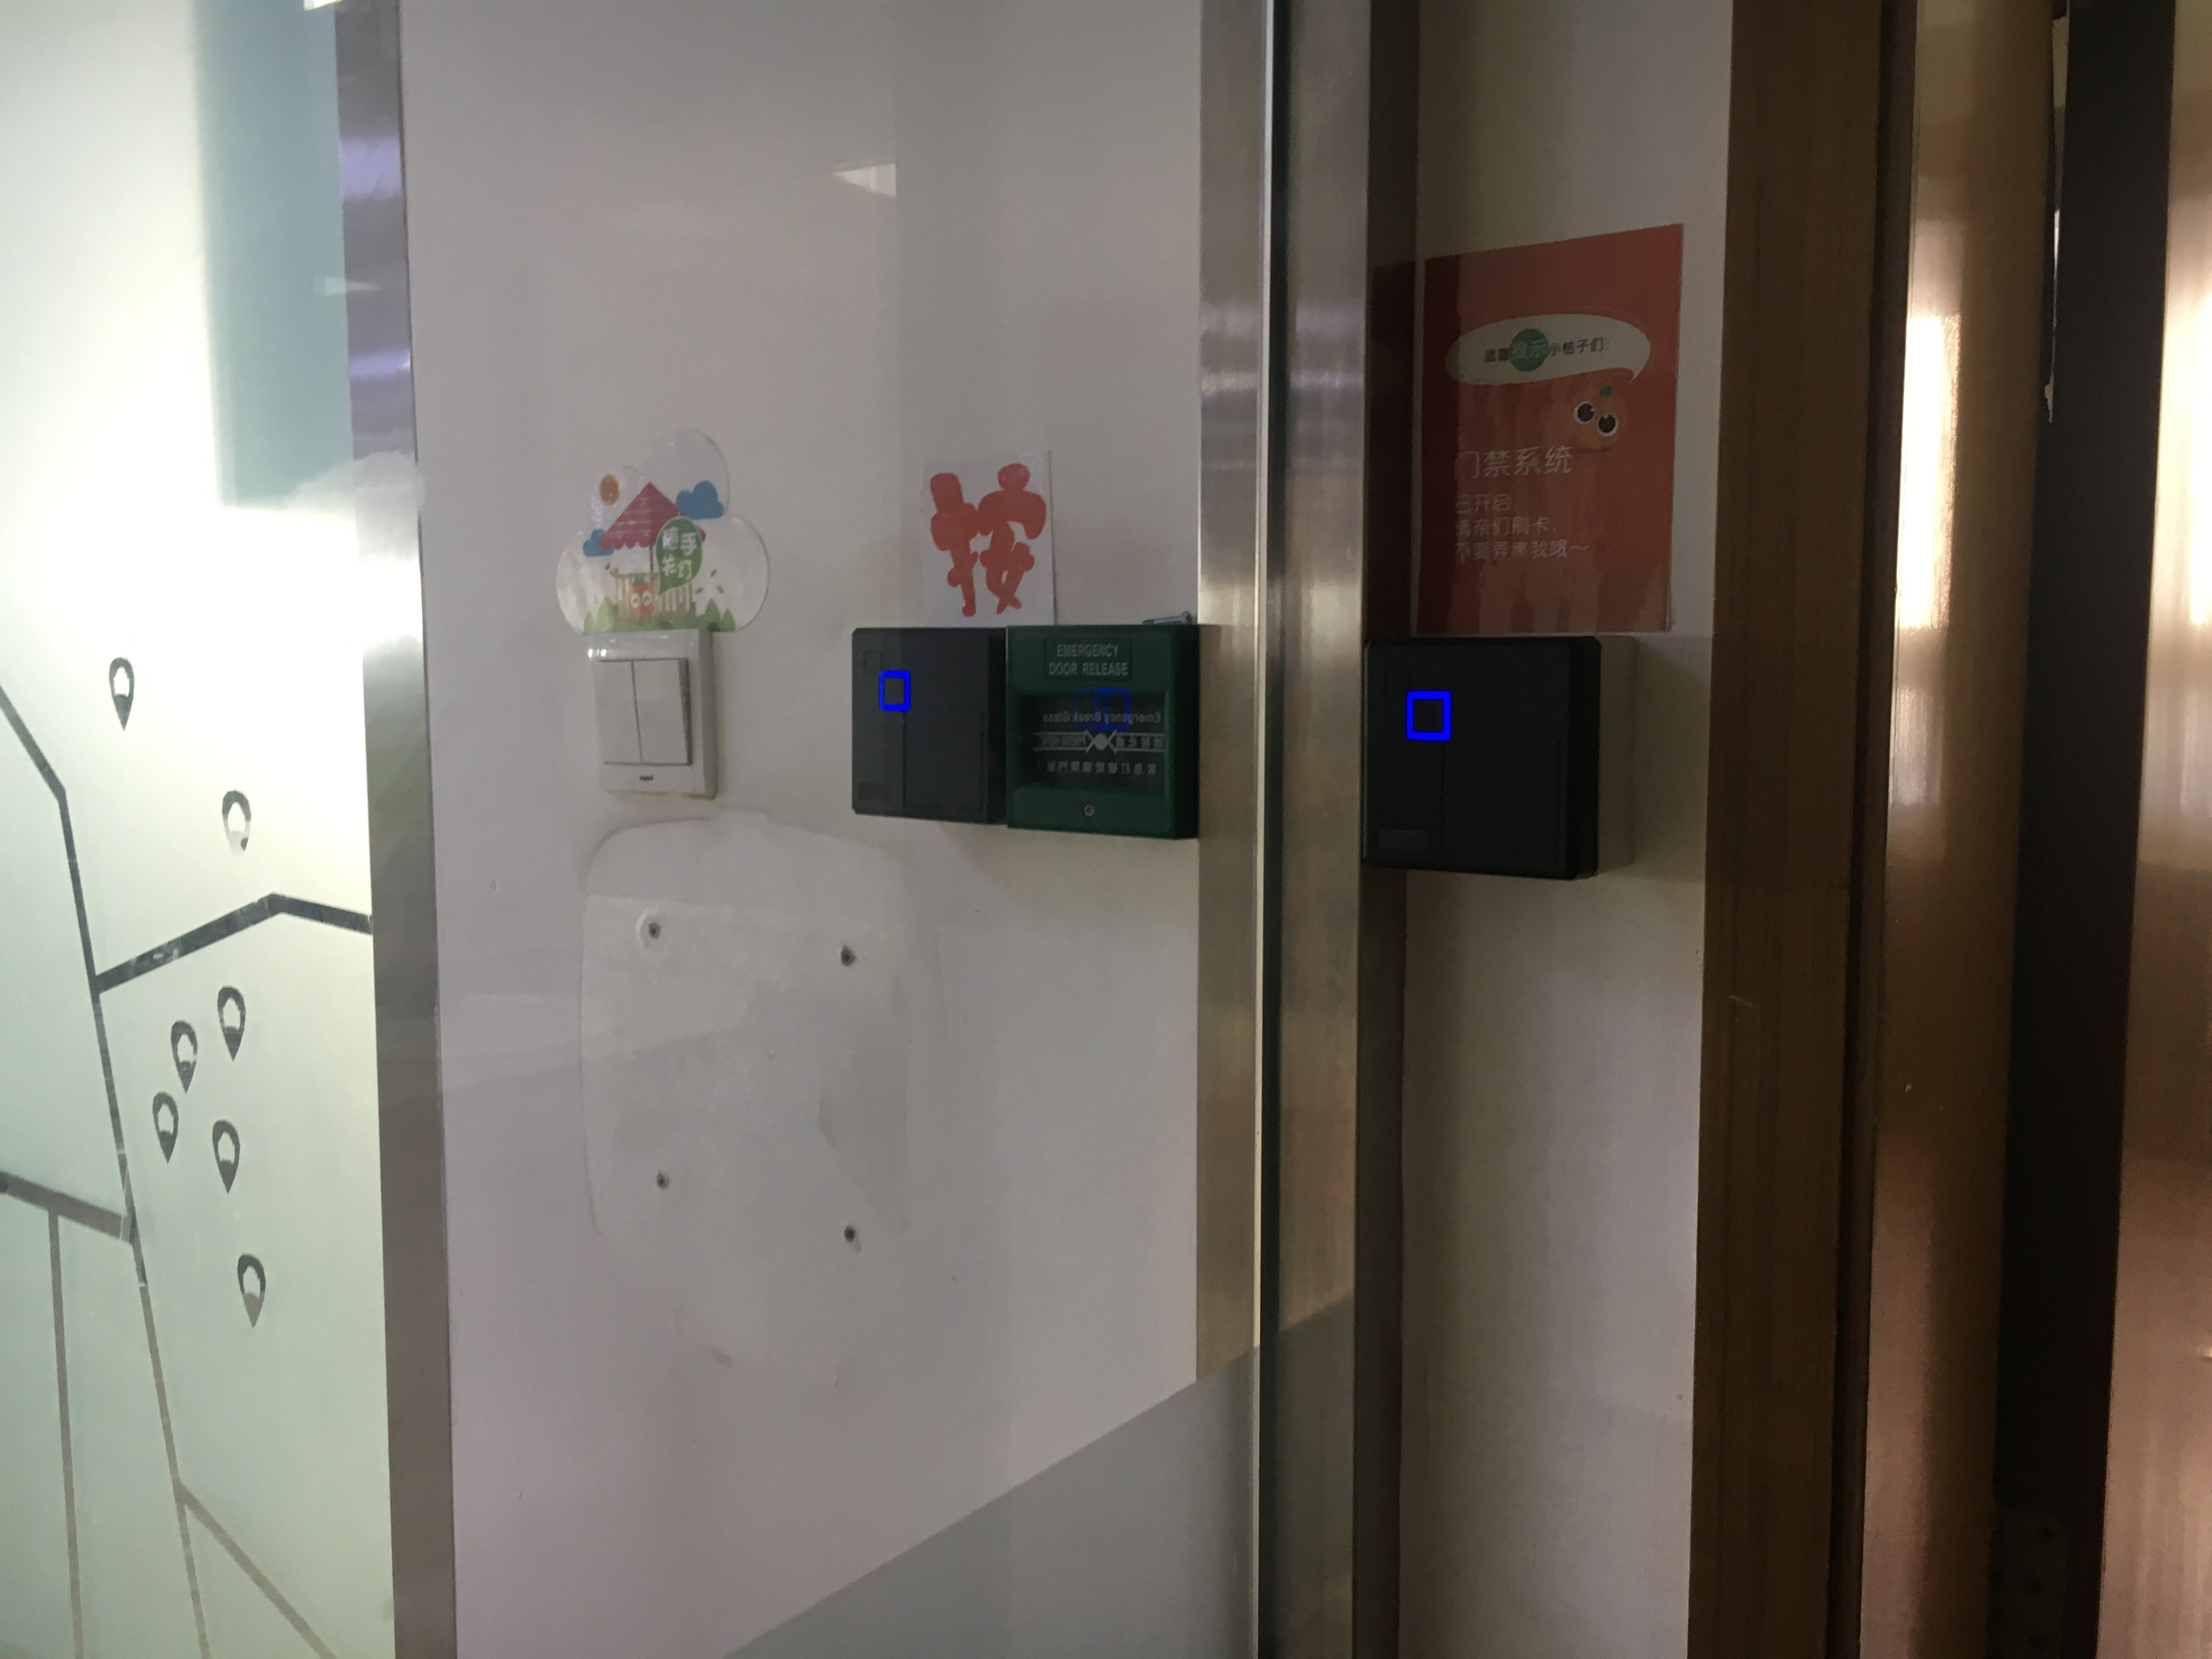 北京天融信公司新办公区刷卡门禁系统安装工程